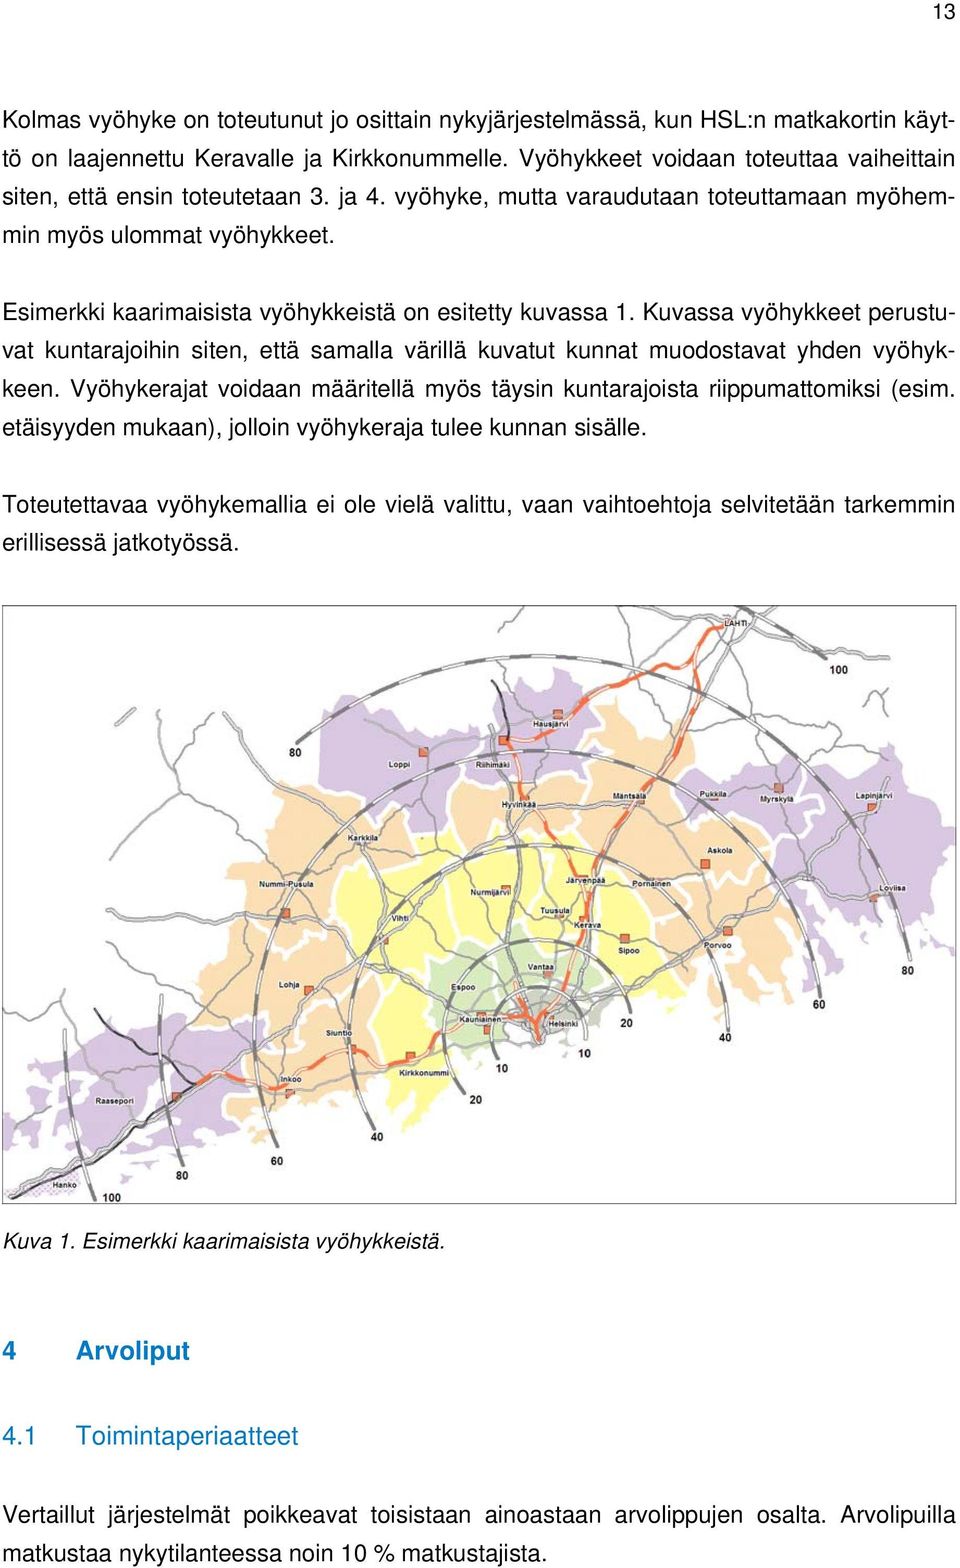 Esimerkki kaarimaisista vyöhykkeistä on esitetty kuvassa 1. Kuvassa vyöhykkeet perustuvat kuntarajoihin siten, että samalla värillä kuvatut kunnat muodostavat yhden vyöhykkeen.